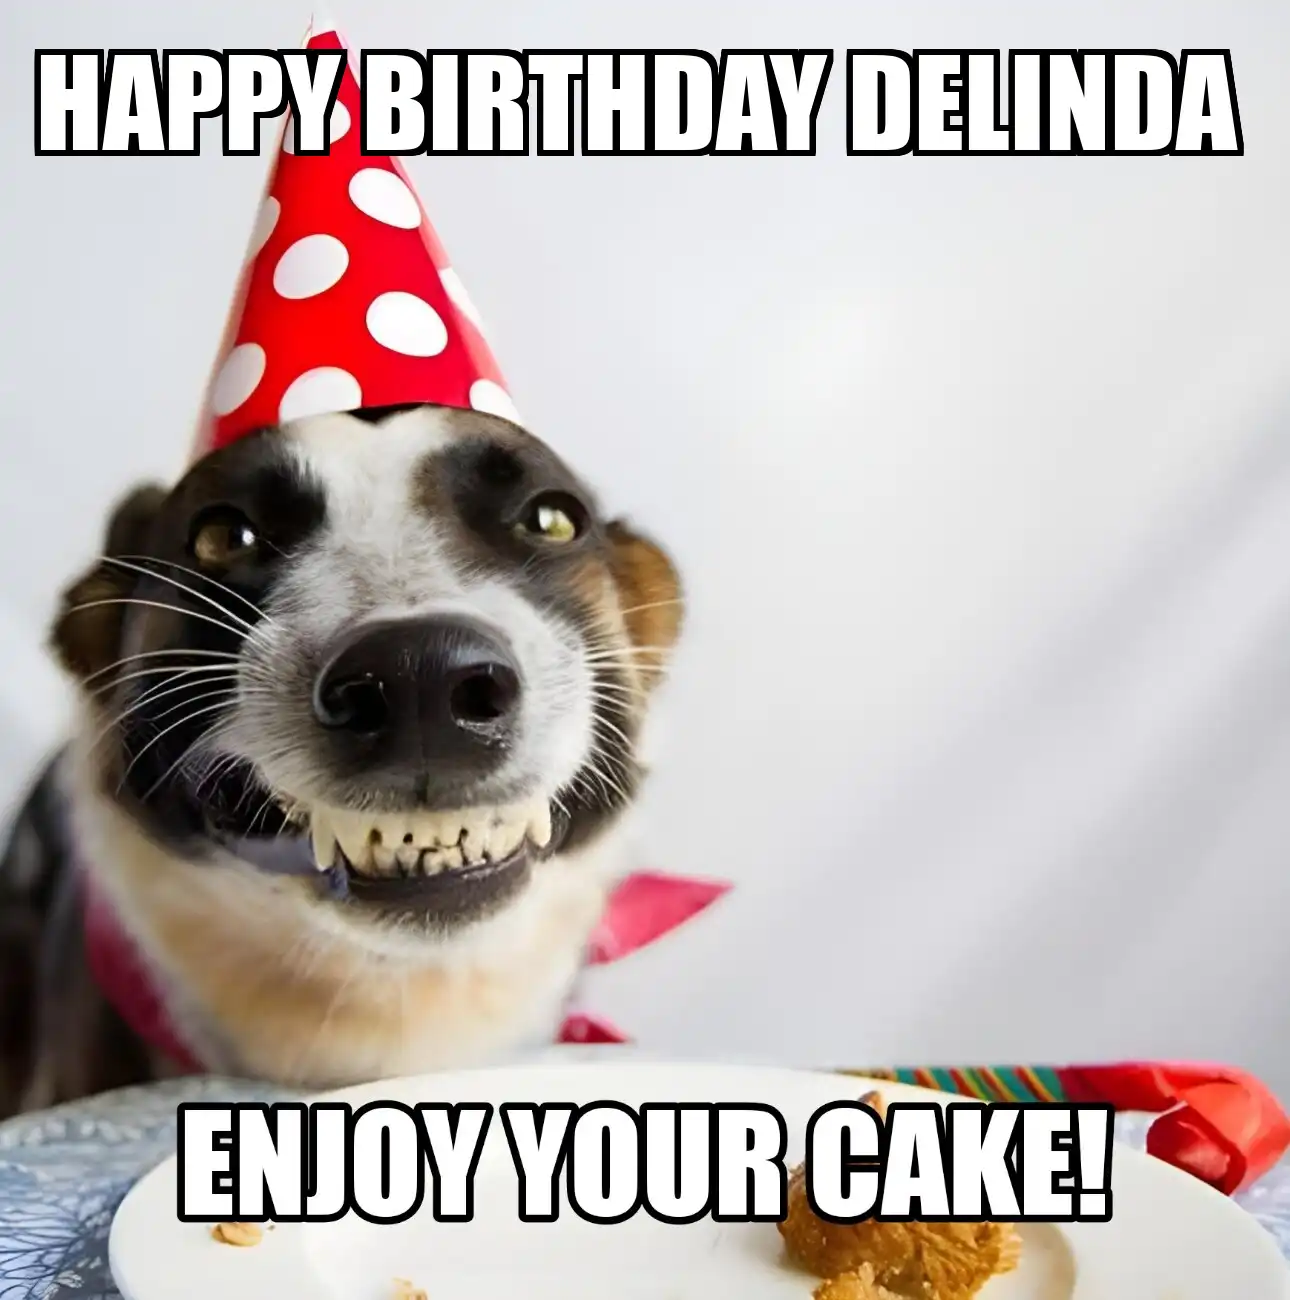 Happy Birthday Delinda Enjoy Your Cake Dog Meme